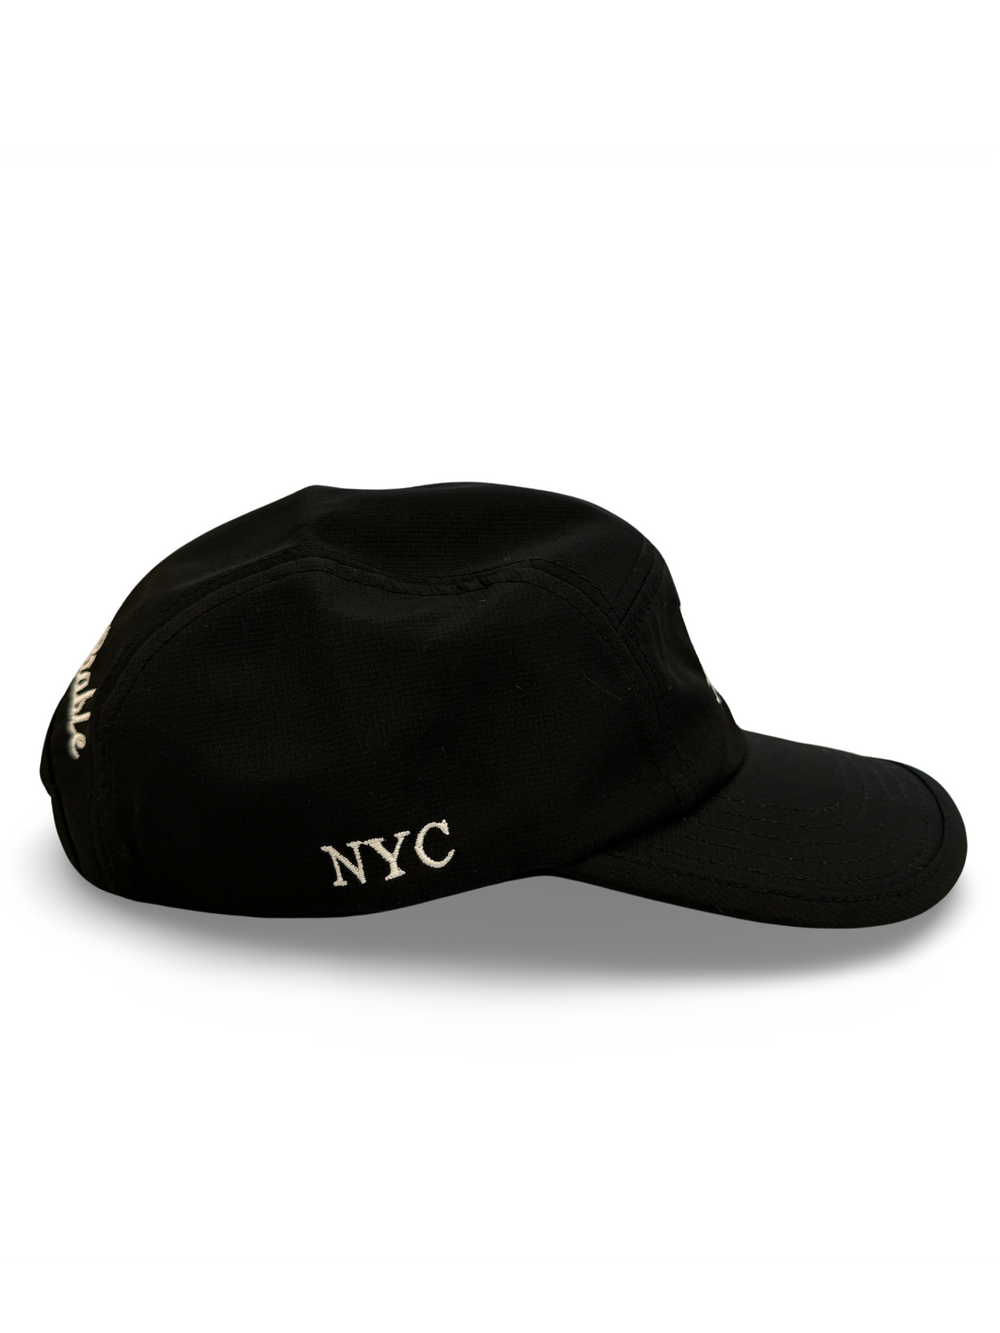 Siegelman Stable NYC Runner Hat